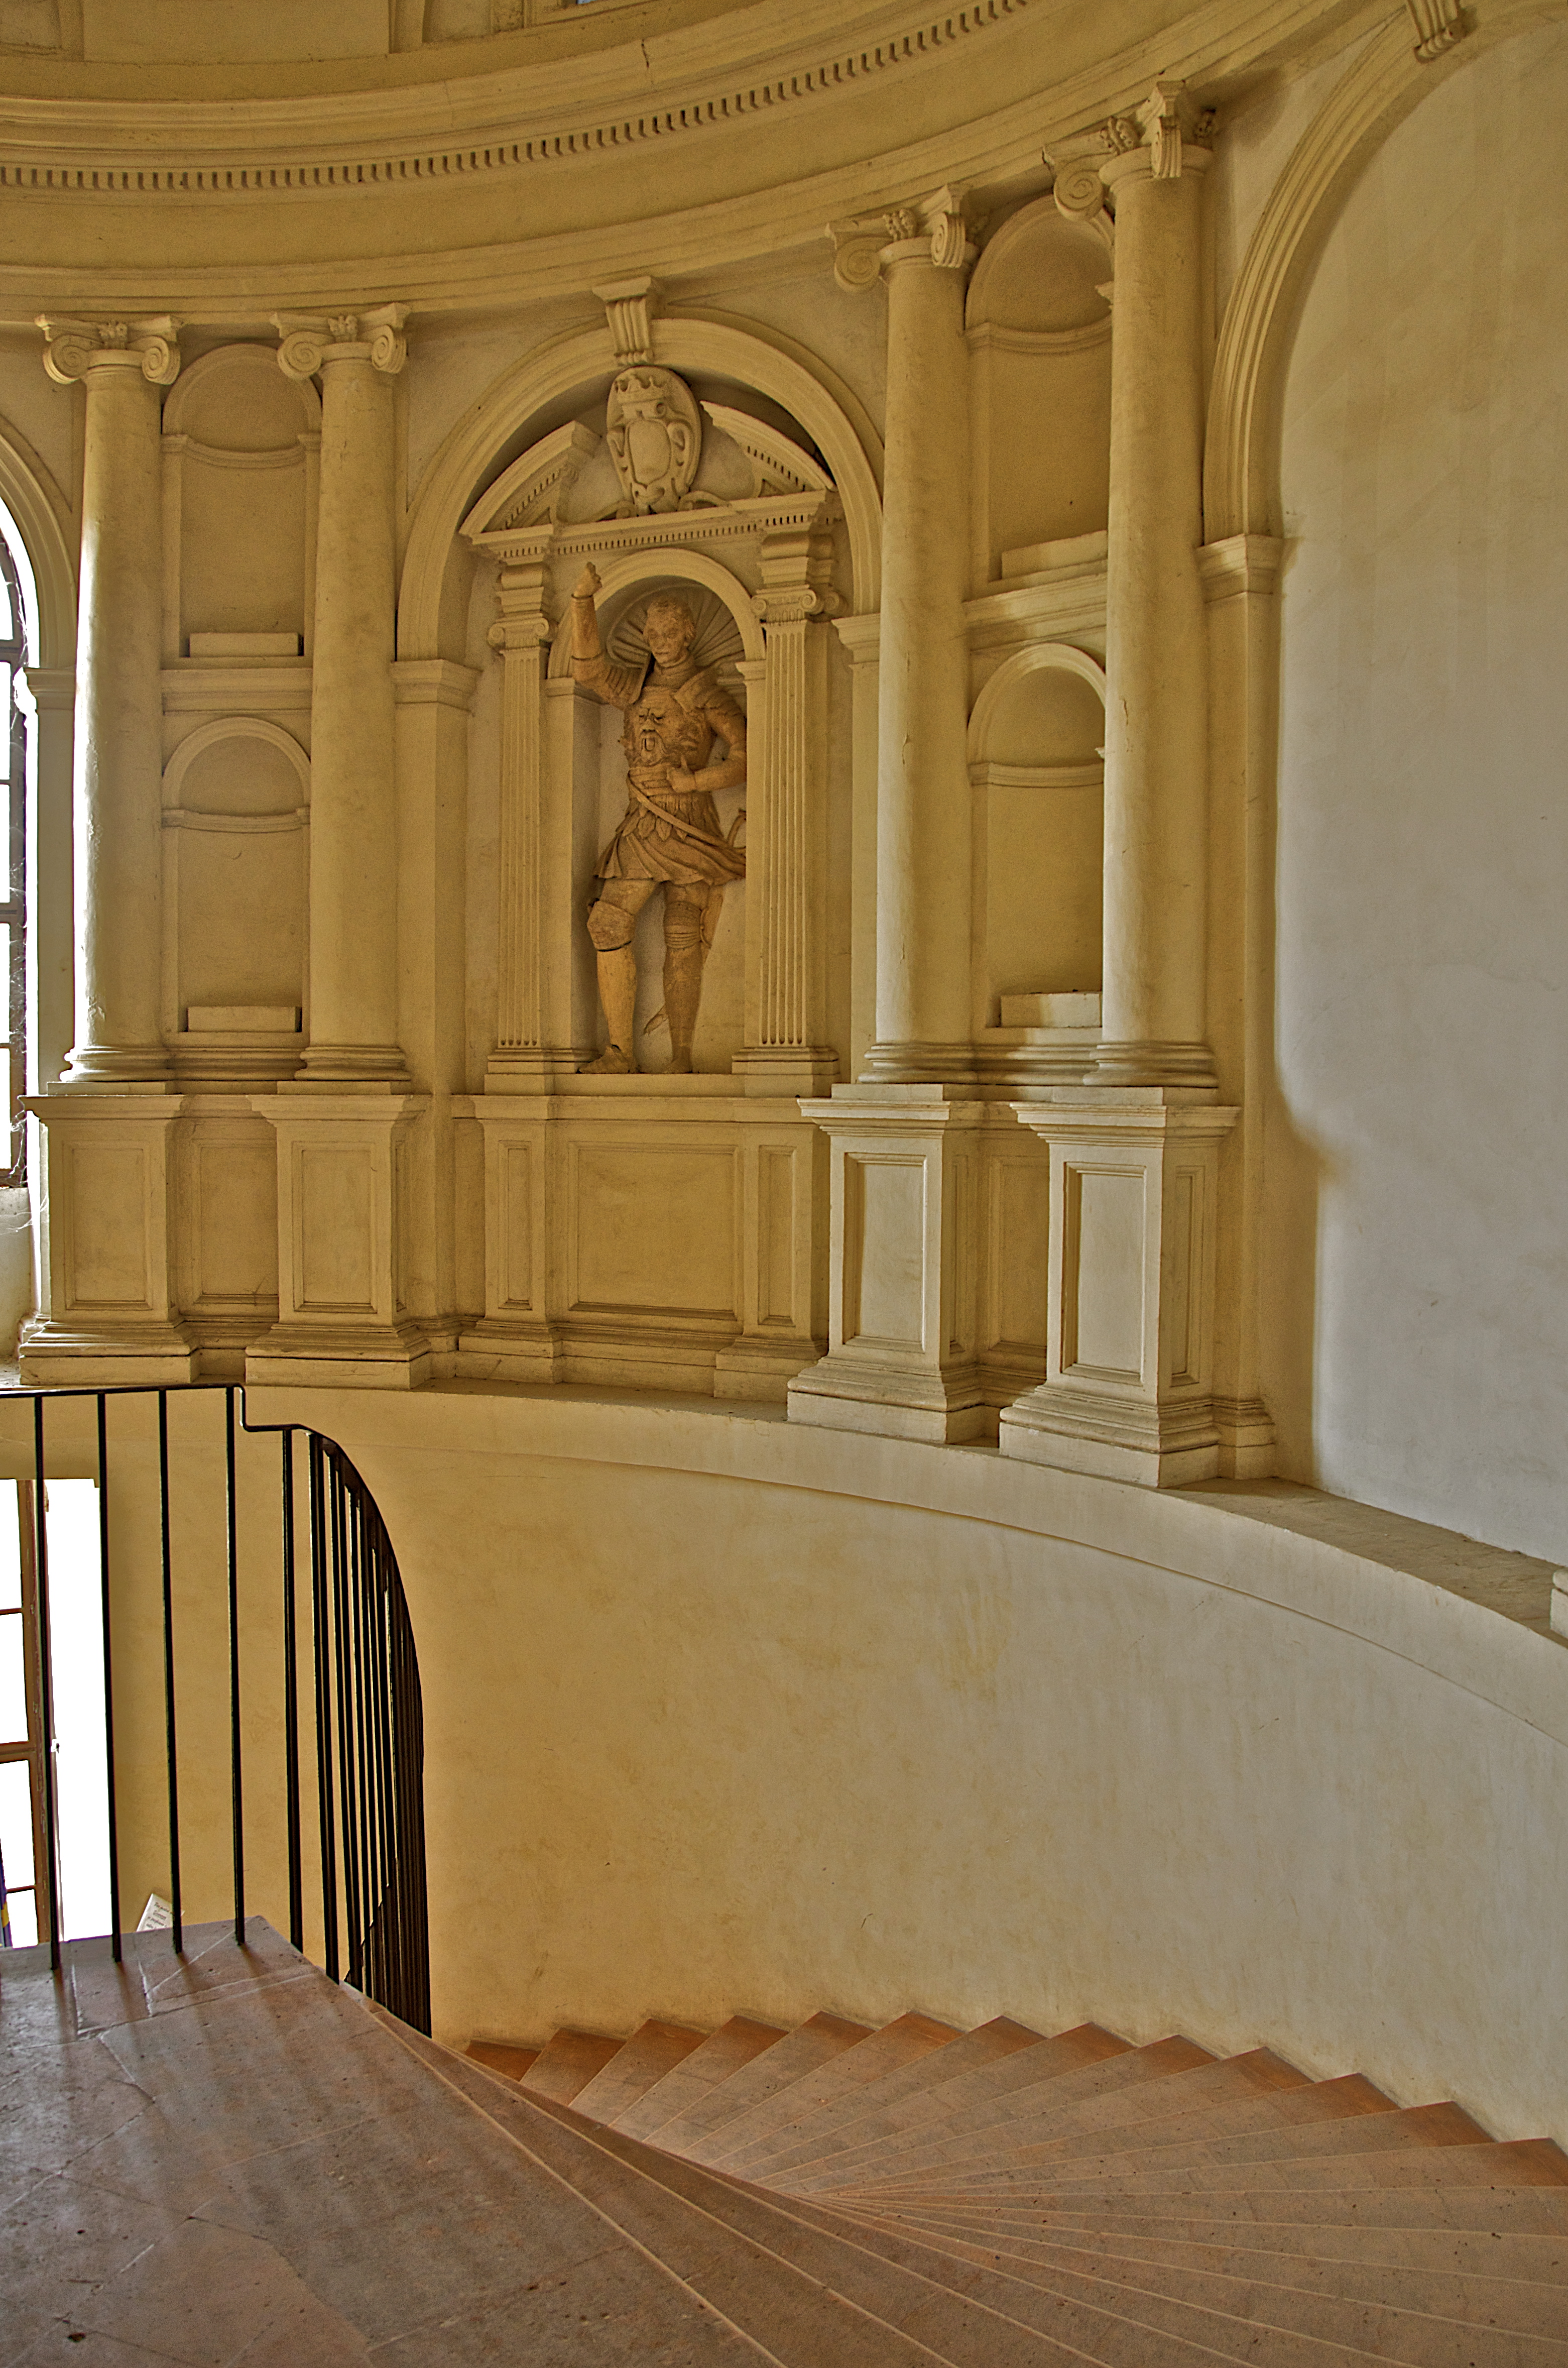 foto: https://upload.wikimedia.org/wikipedia/commons/3/31/Statue_sullo_scalone.jpg